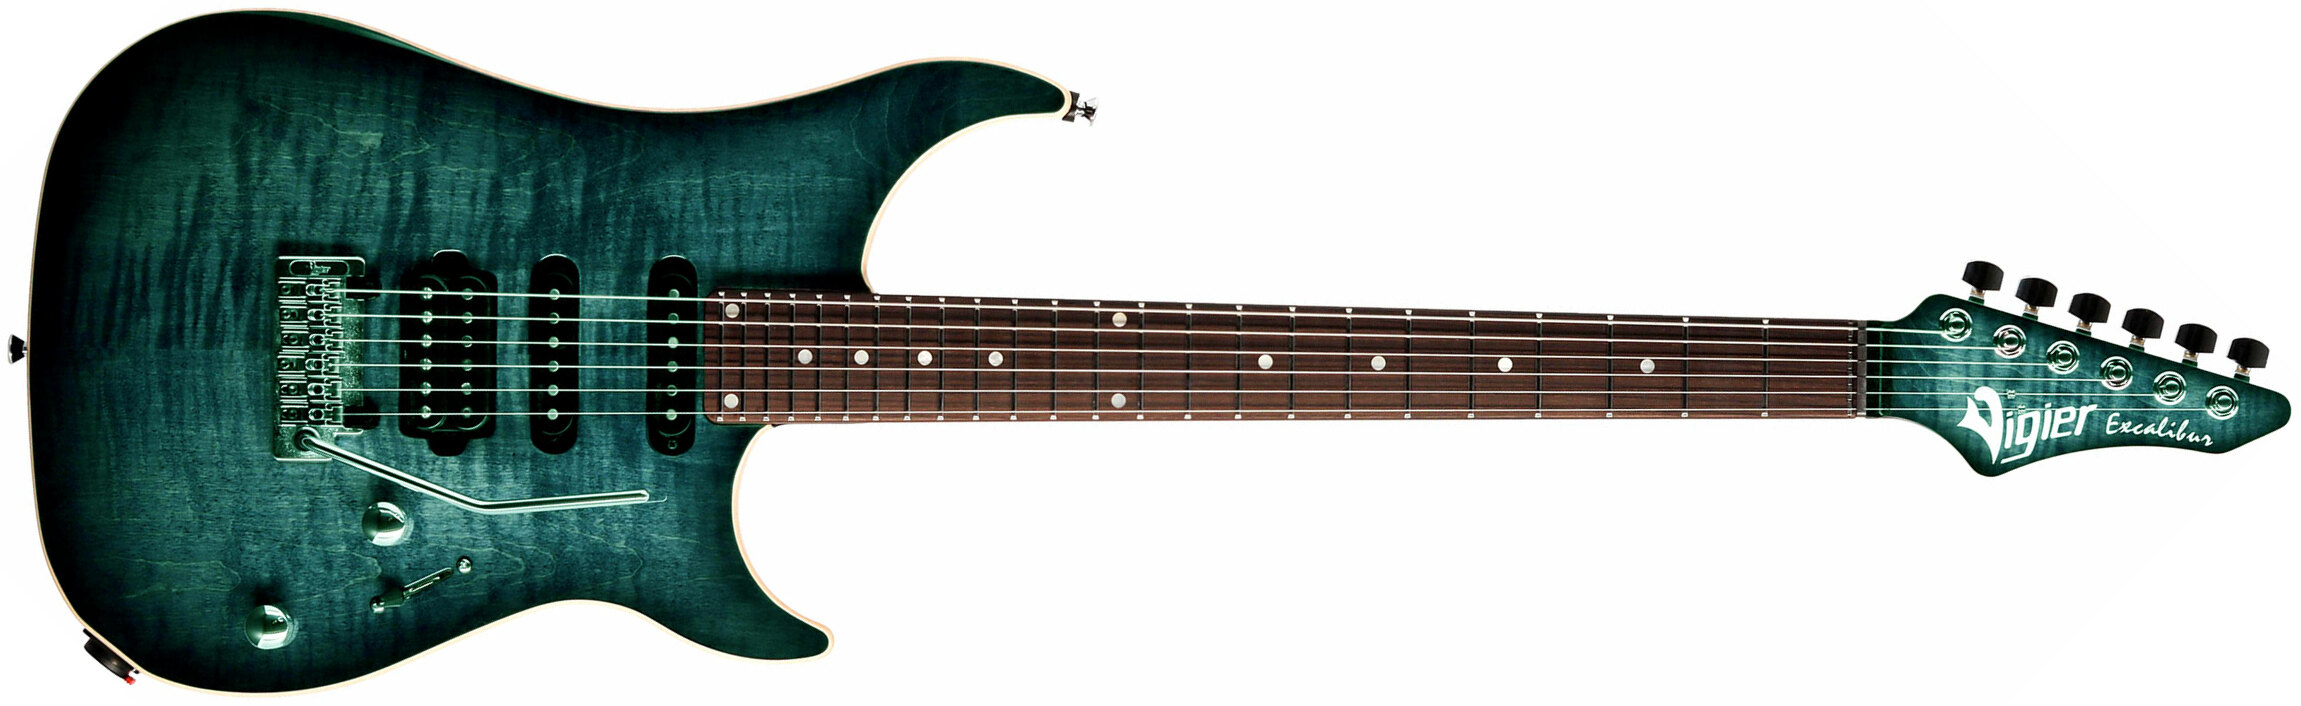 Vigier Excalibur Ultra Blues Hss Trem Rw - Deep Blue - Str shape electric guitar - Main picture